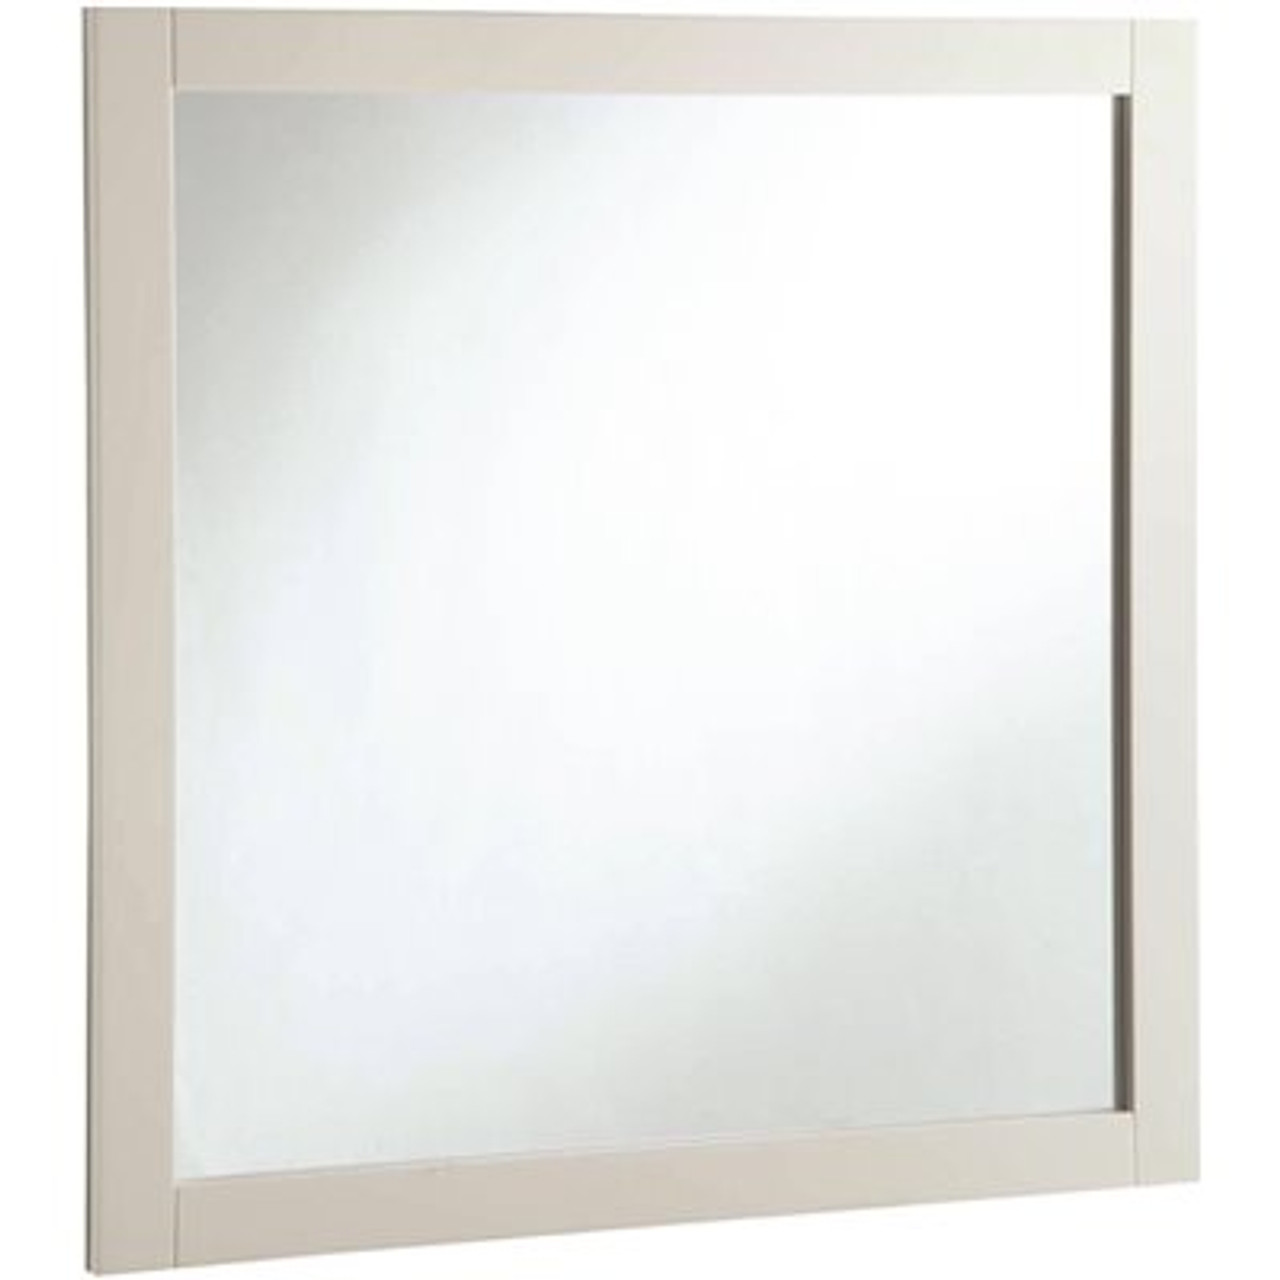 Design House 30 In. W X 30 In. H Framed Square Bathroom Vanity Mirror In Semi-Gloss White